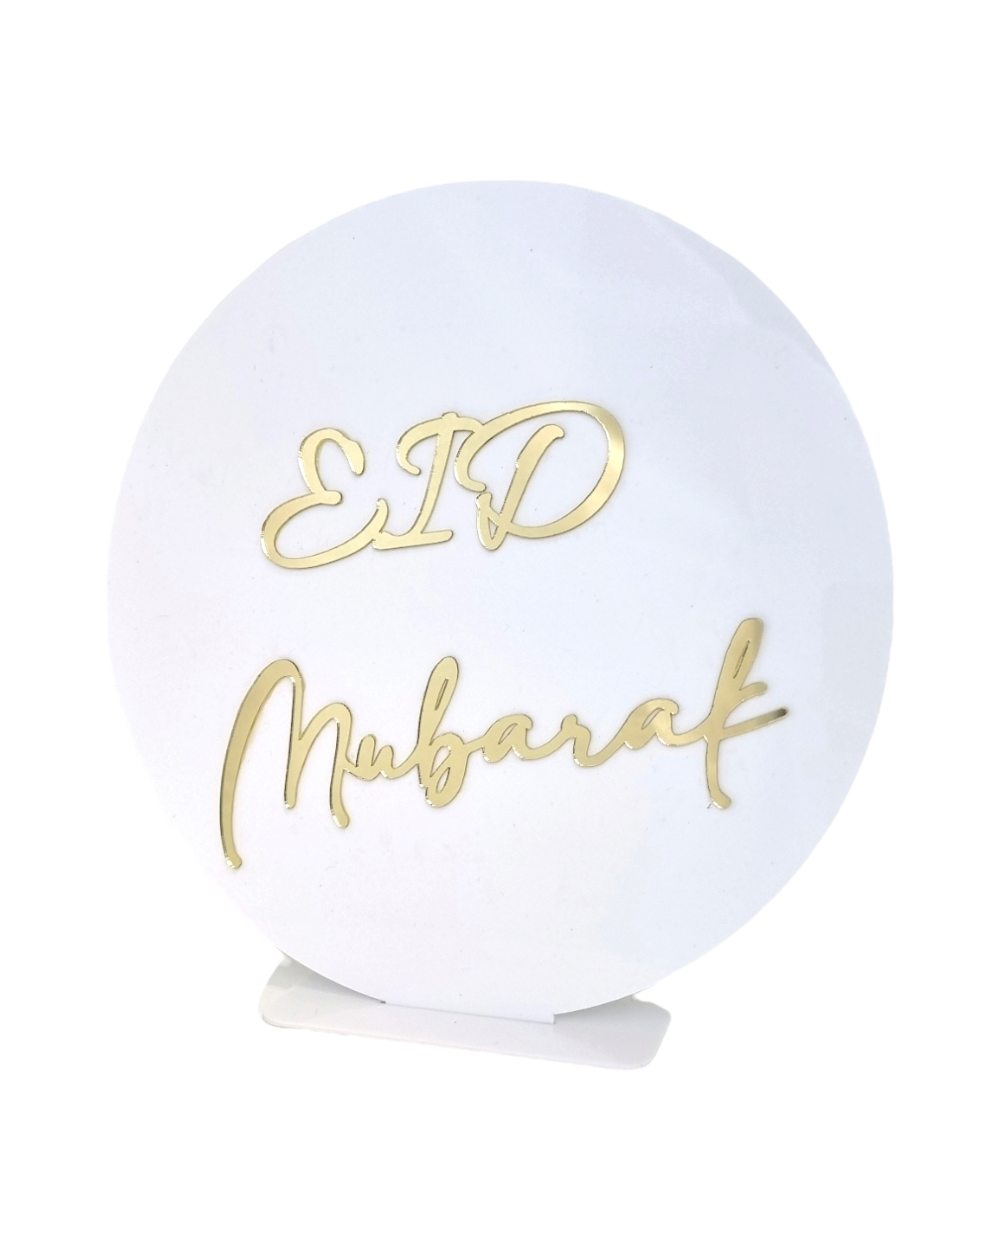 Décoration Eid Mubarak - Acrylique blanc et doré